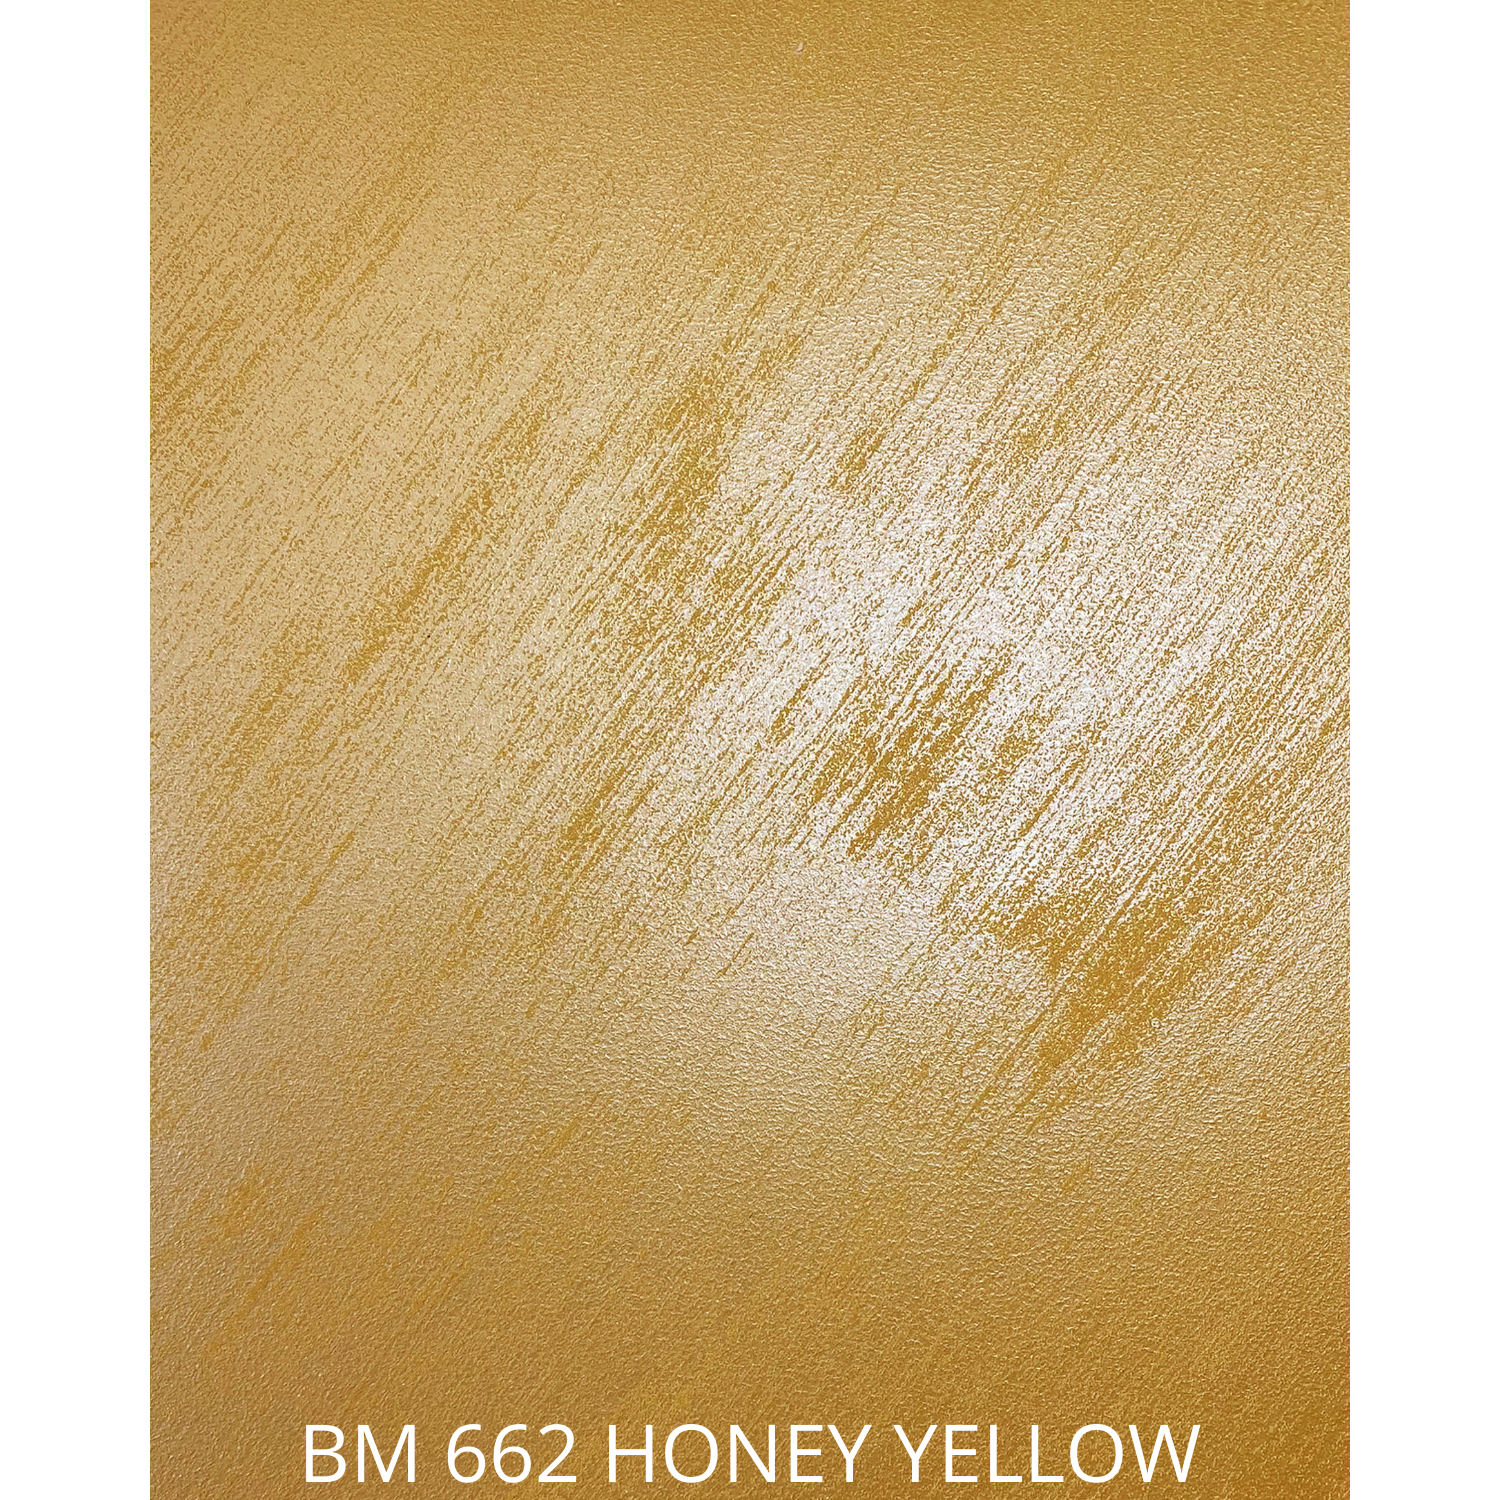 BM 662 HONEY YELLOW